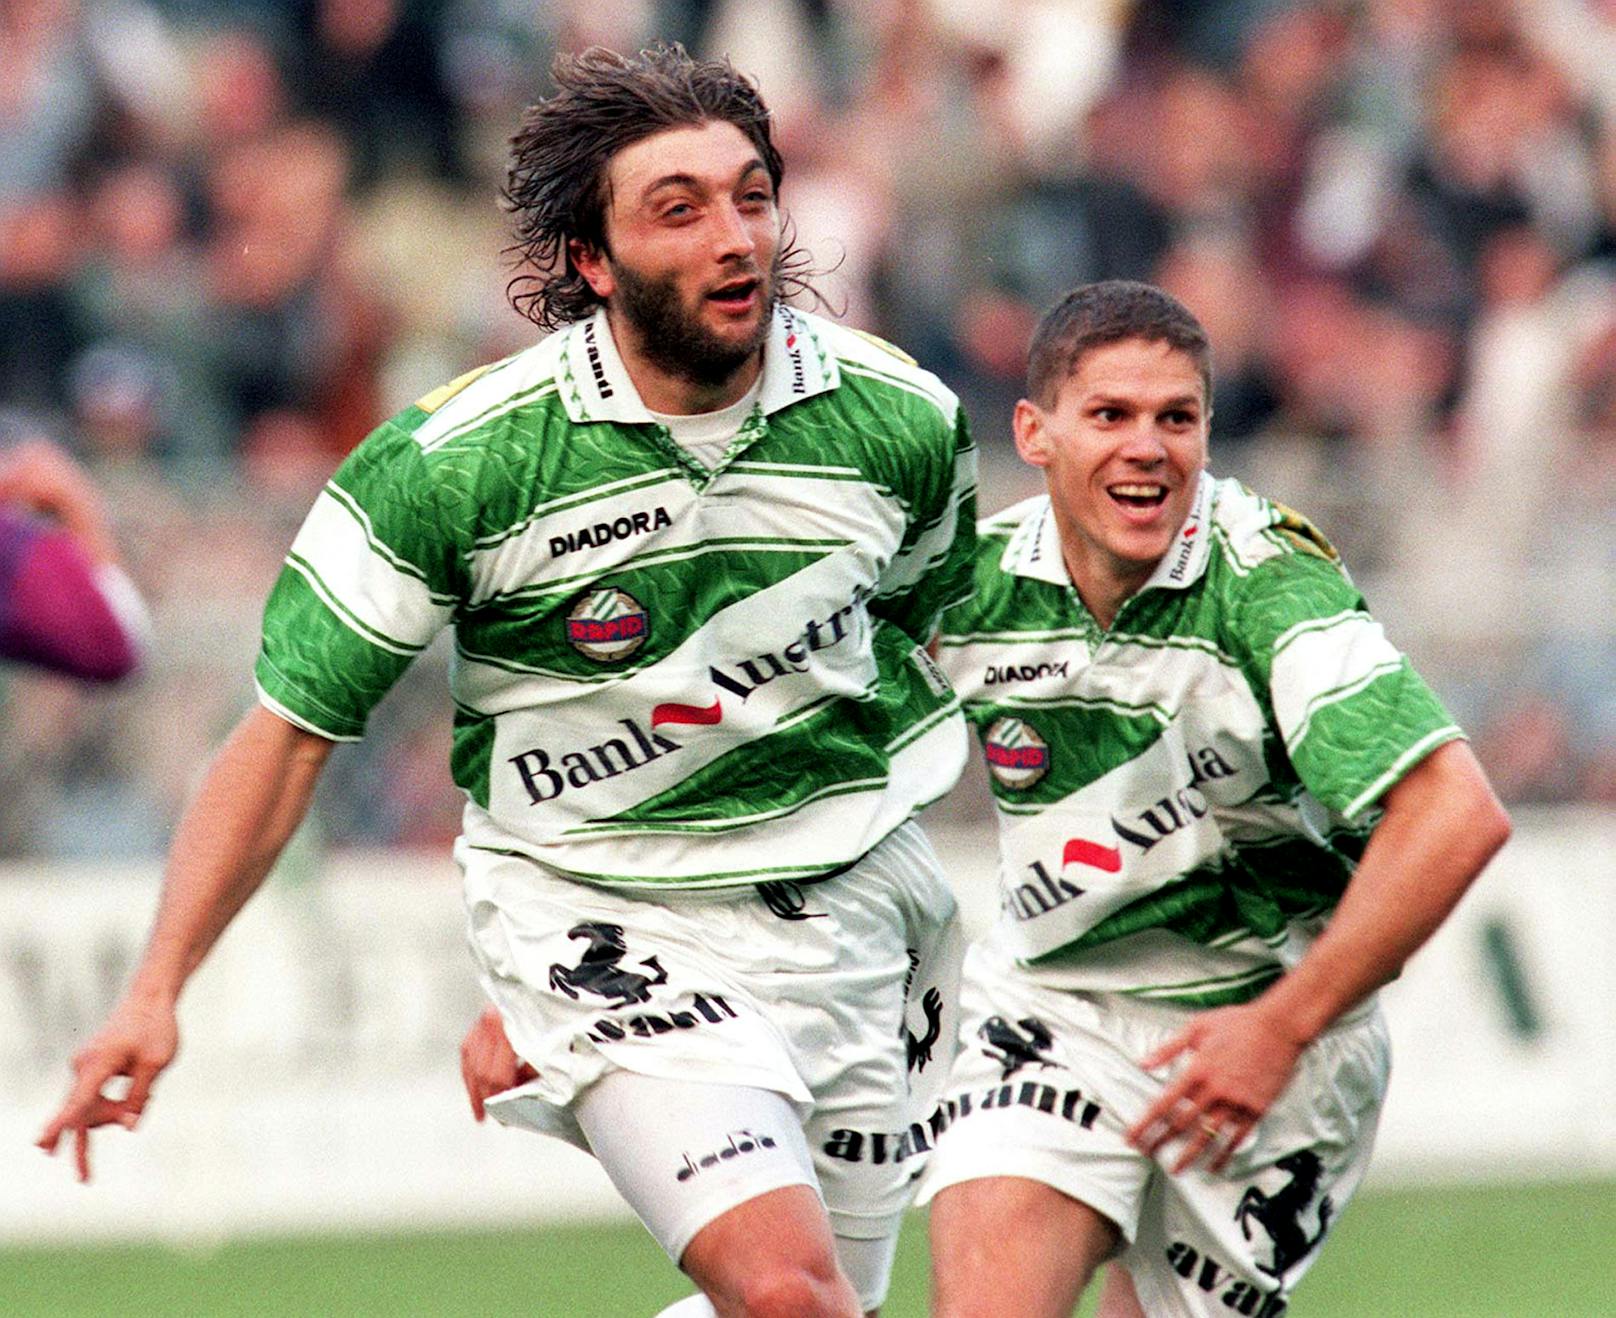 <strong>Trifon Ivanov:</strong>&nbsp;Der Bulgare spielte und kämpfte sich schnell in die Herzen der Fans. Obwohl nur zwei Saisonen da, hinterließ er einen bleibenden Eindruck. Wurde 1996 Meister und stand mit Rapid im Europacup-Finale.